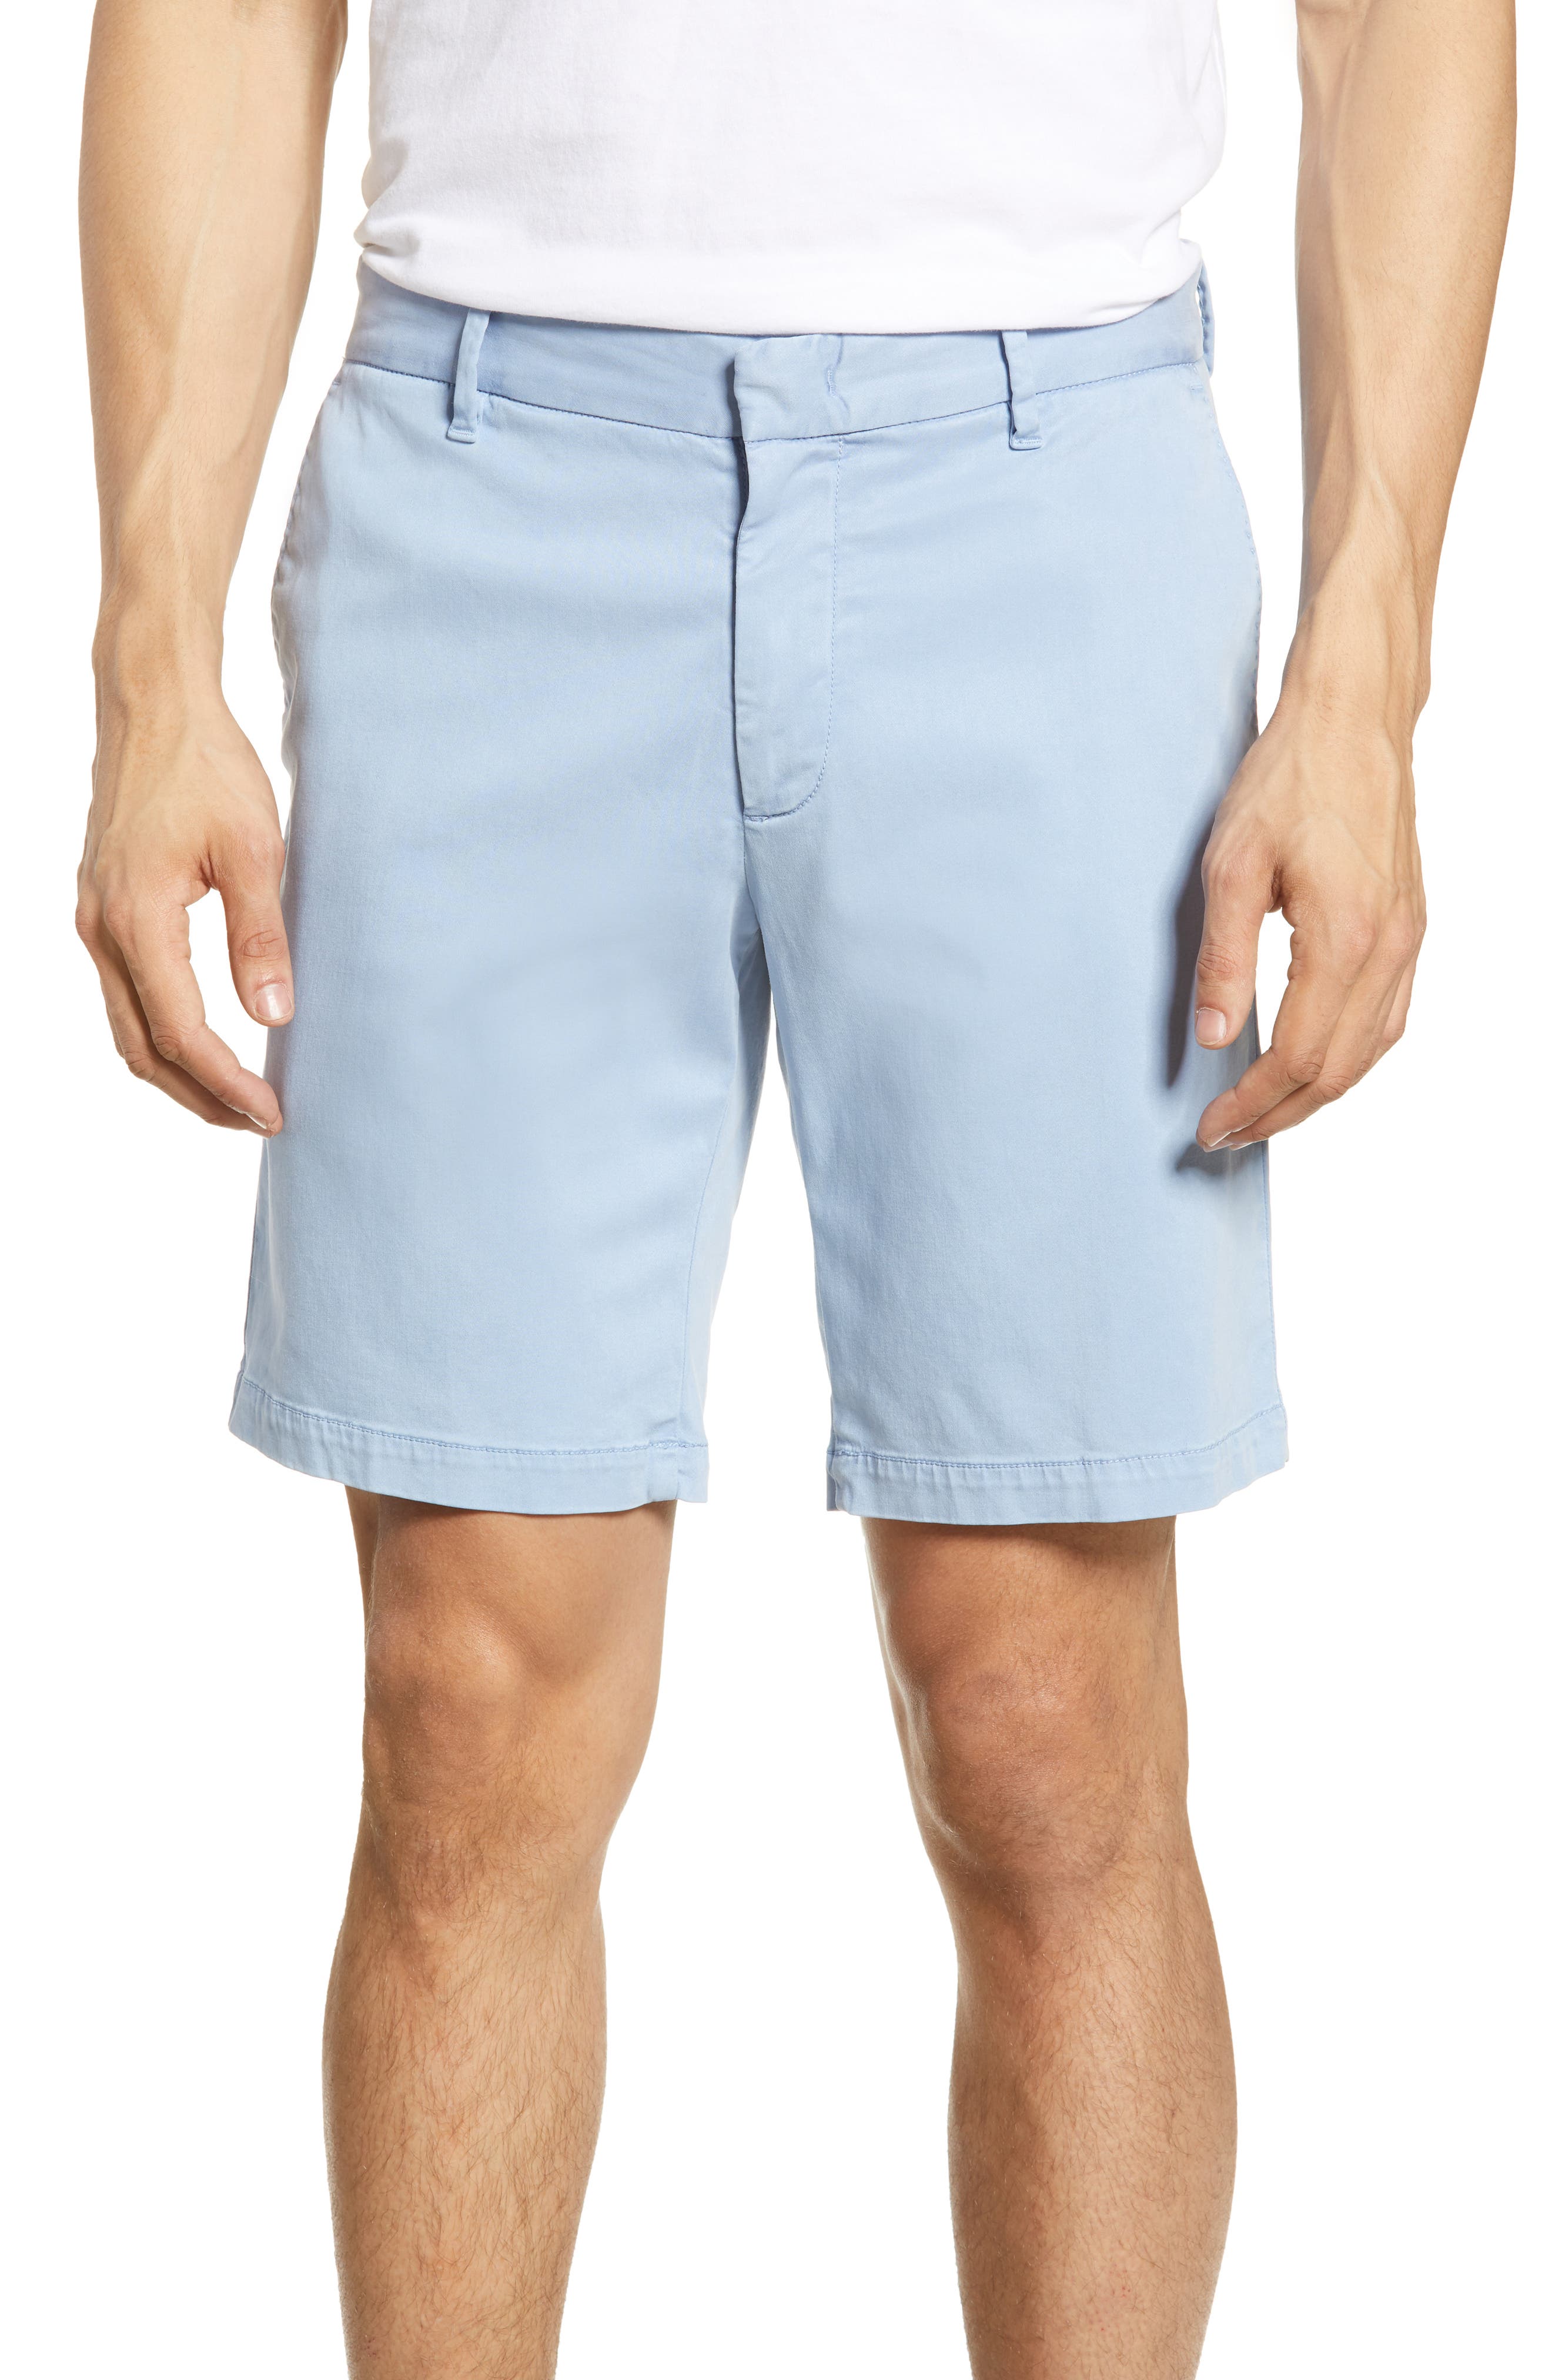 Zachary Prell Catalpa Chino Shorts In Light Blue